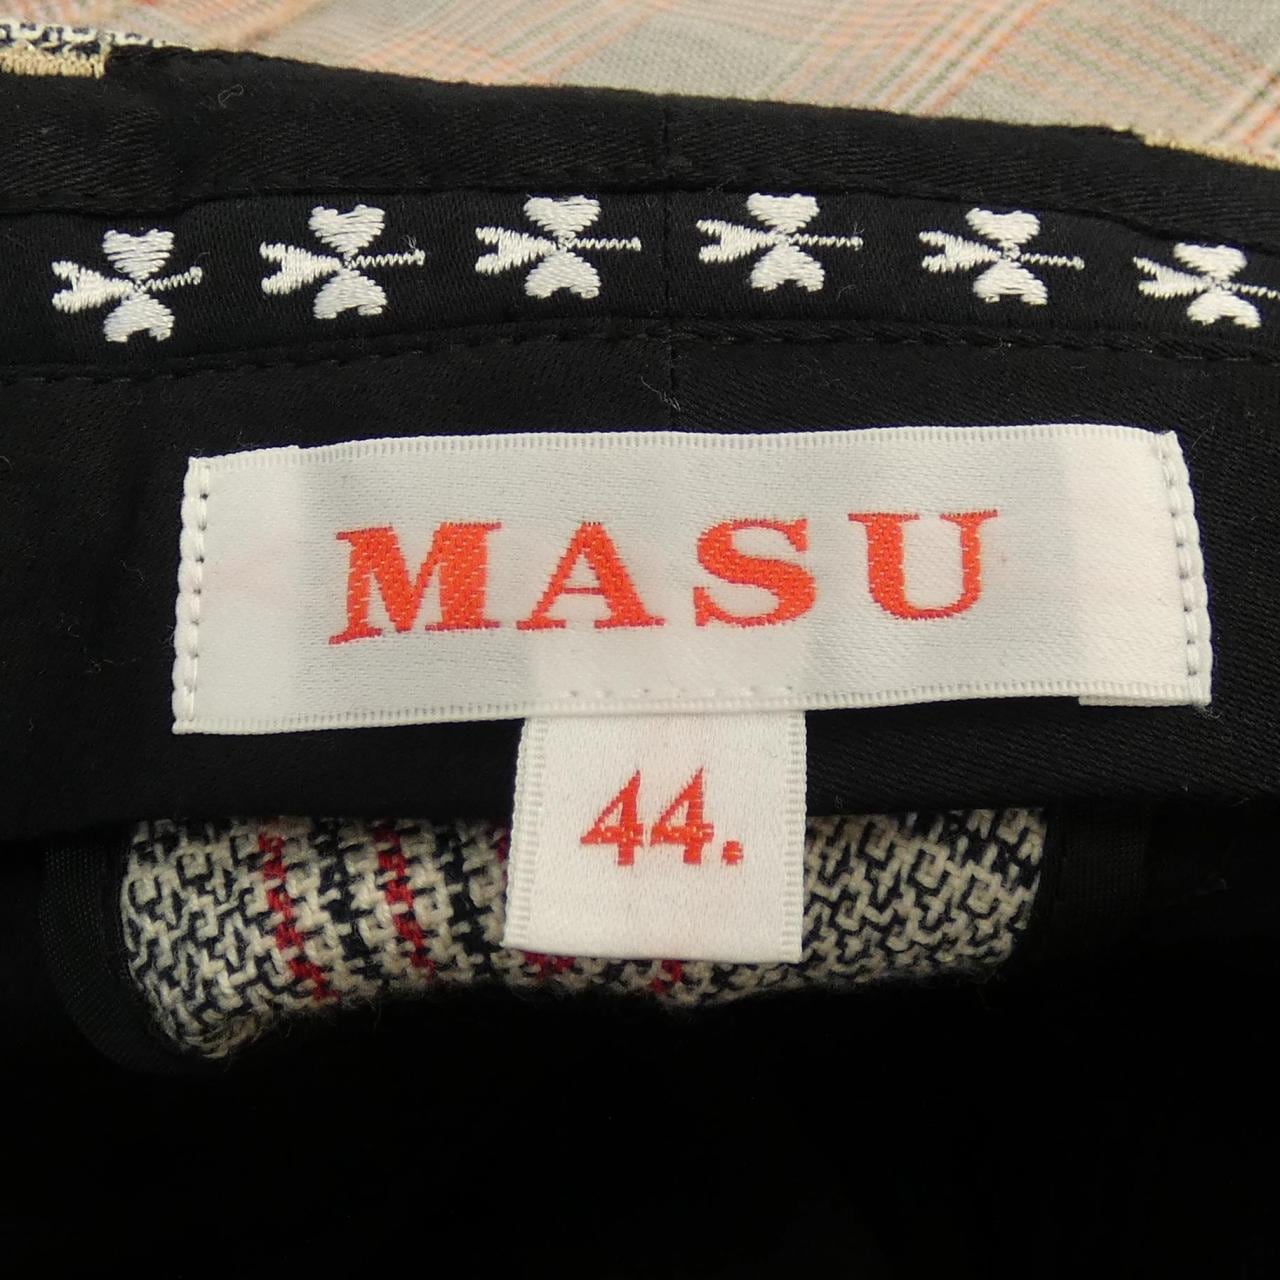 MASUU褲